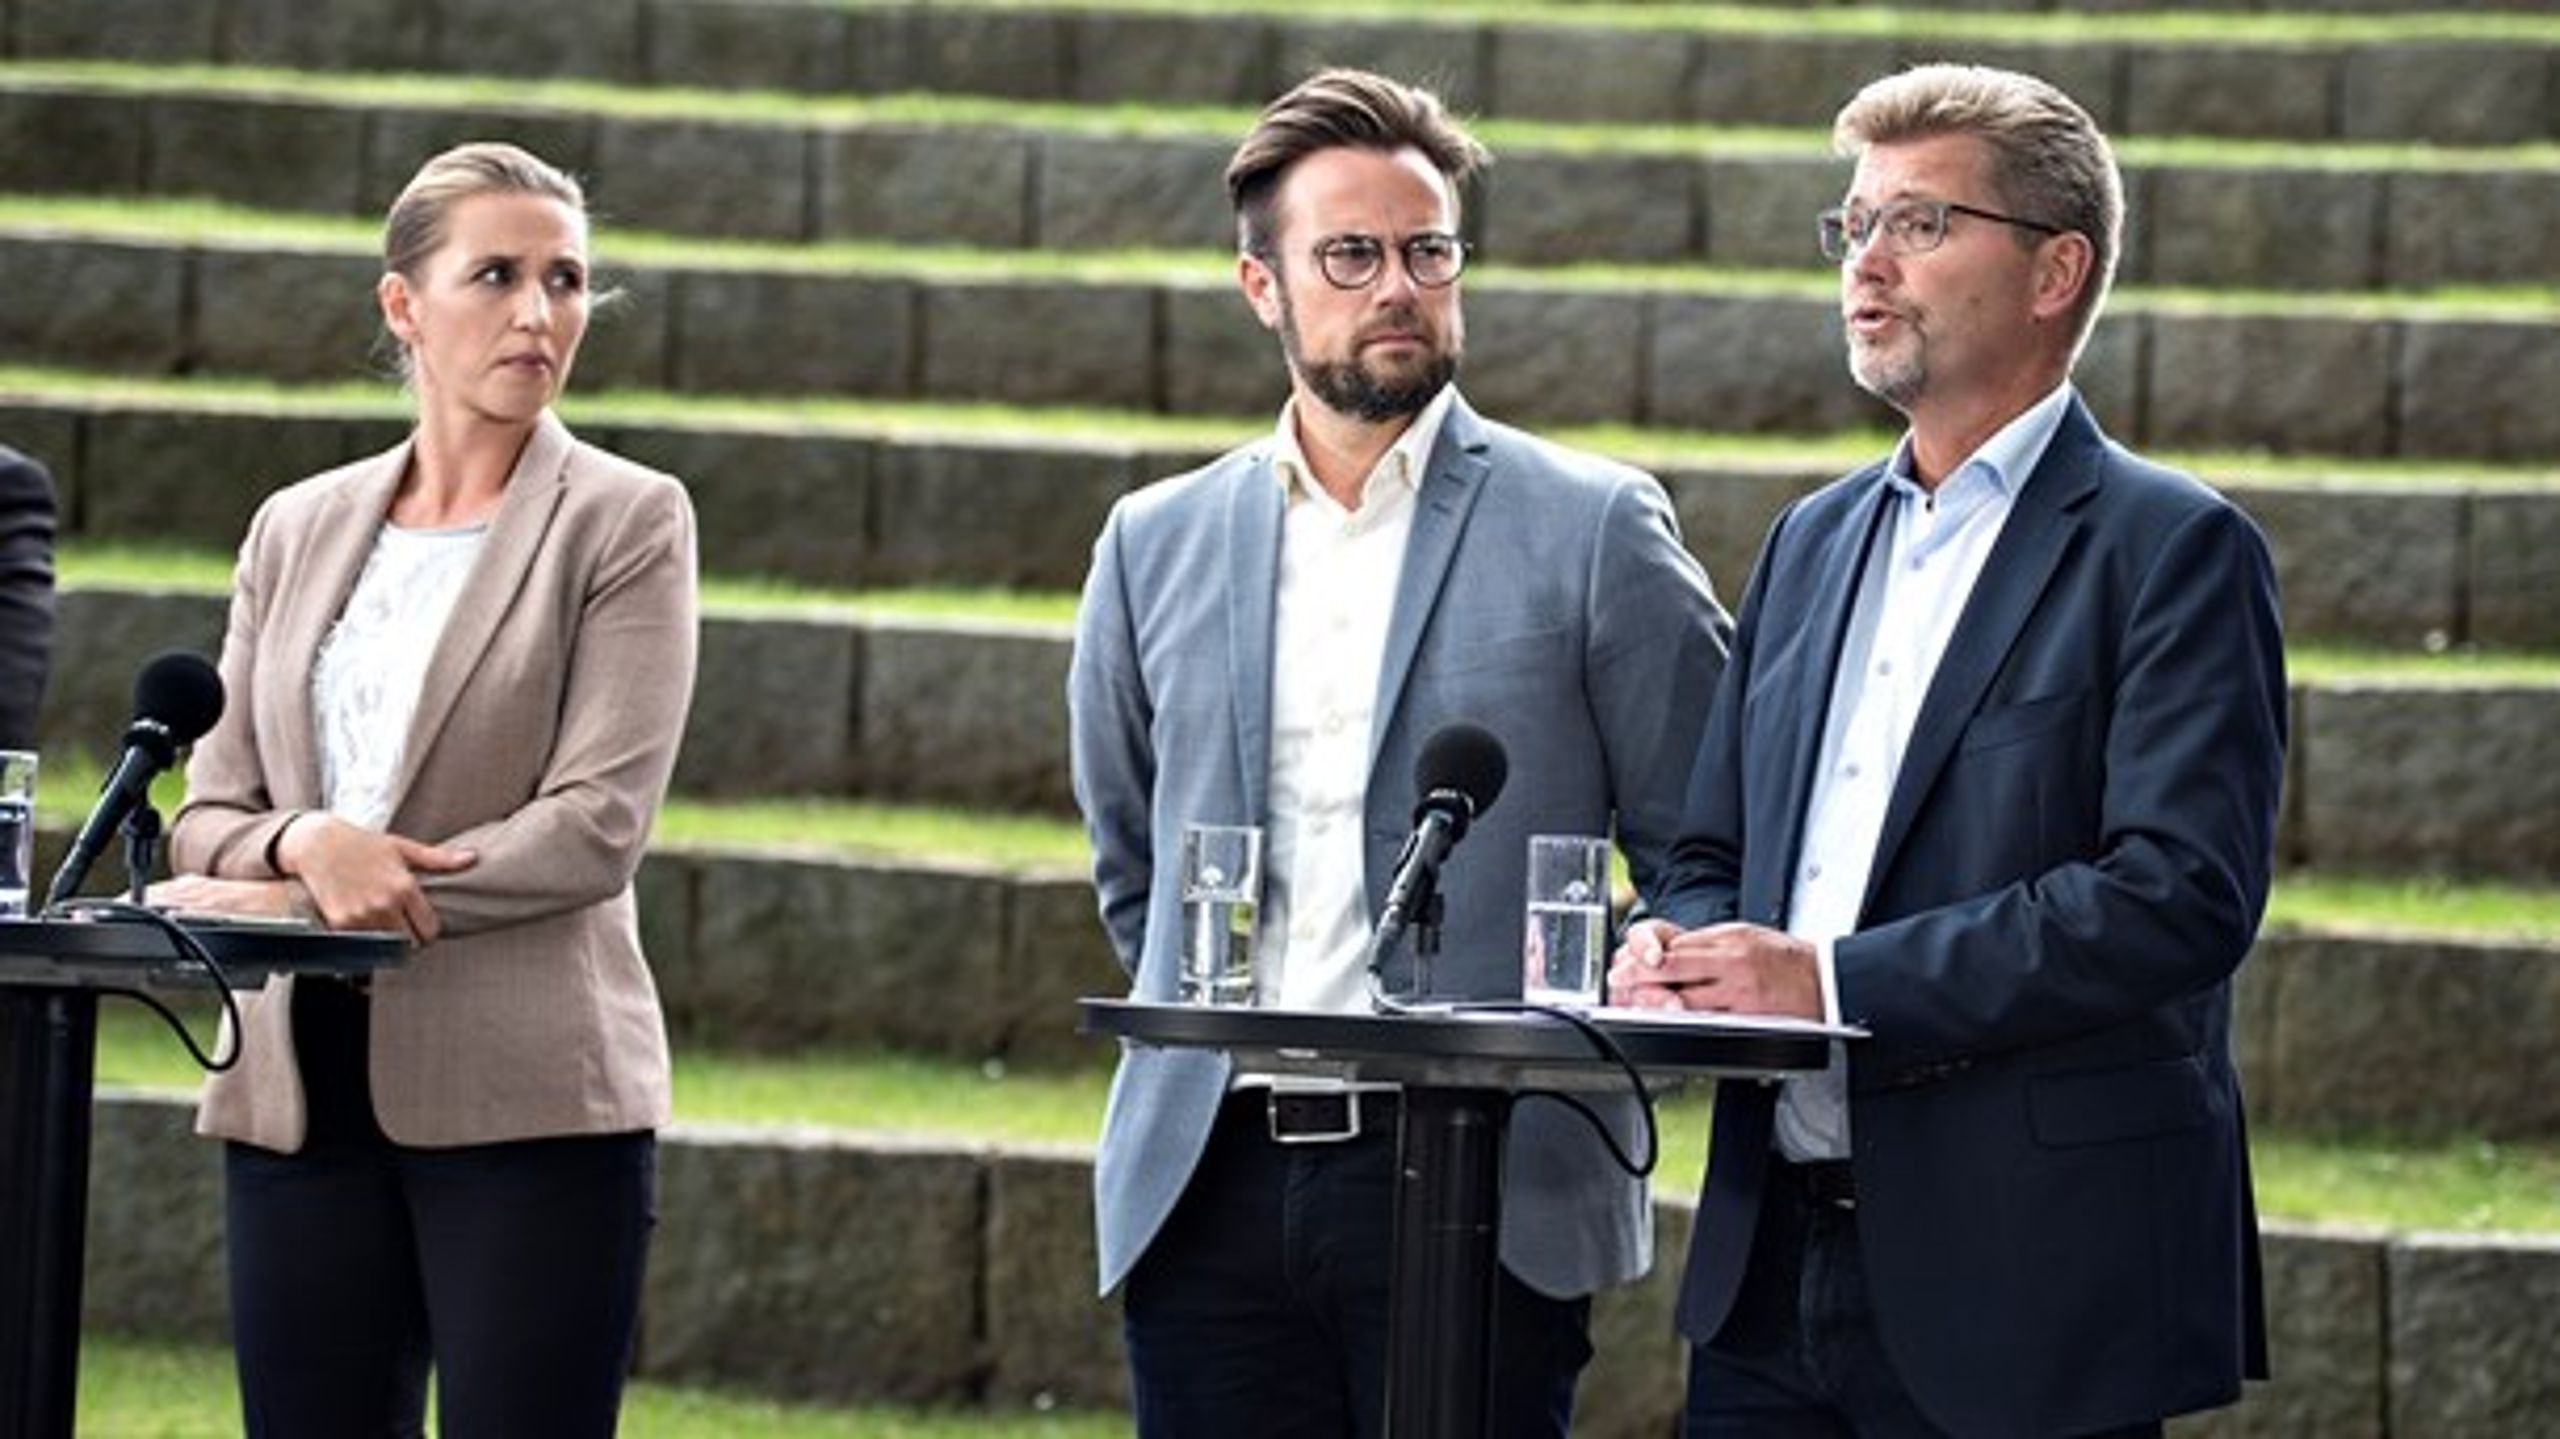 Odenses borgmester, Peter Rahbæk Juel, har fået godkendt en skattestigning. Flere borgmestre&nbsp;peger på, at København bør sænke skatten, men det har hovedstaden ikke i sinde at gøre.